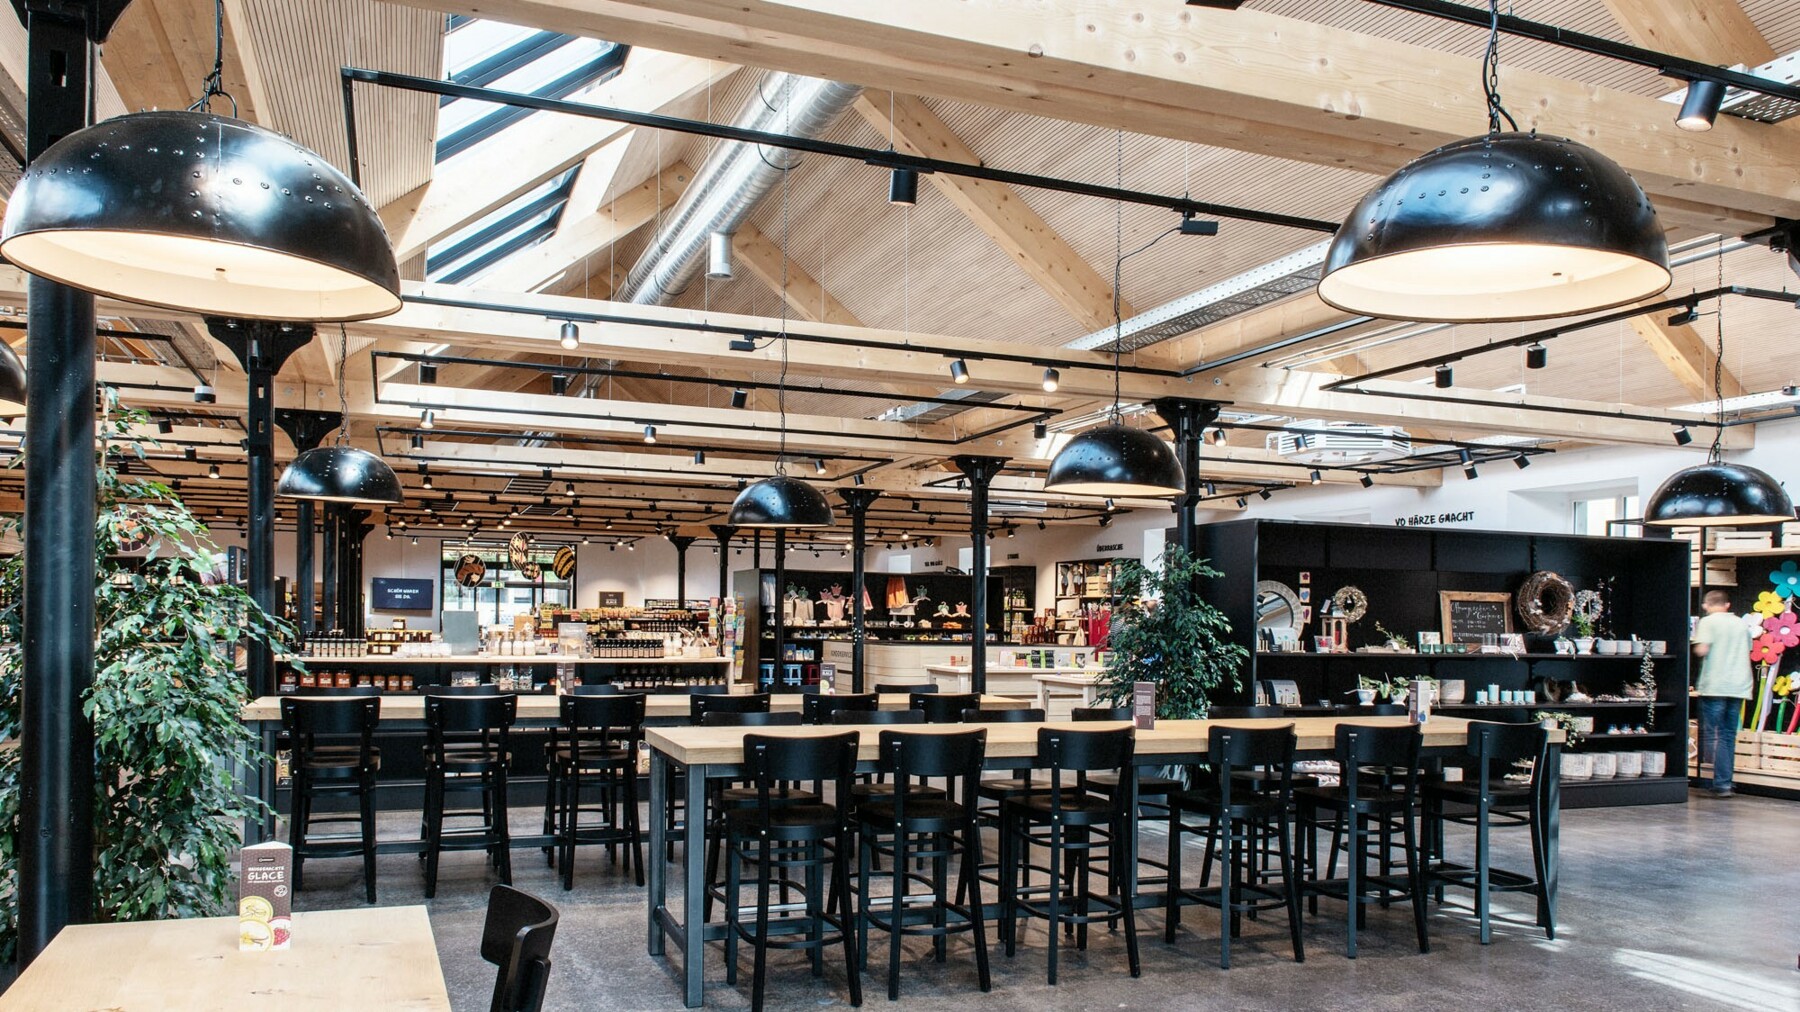 Das Café wird charakterisiert durch edle Metalloberflächen in Schwarz, die durch die Holzbalken in Weißtanne aufgelockert werden, die den Räumlichkeiten Wärme verleihen. 